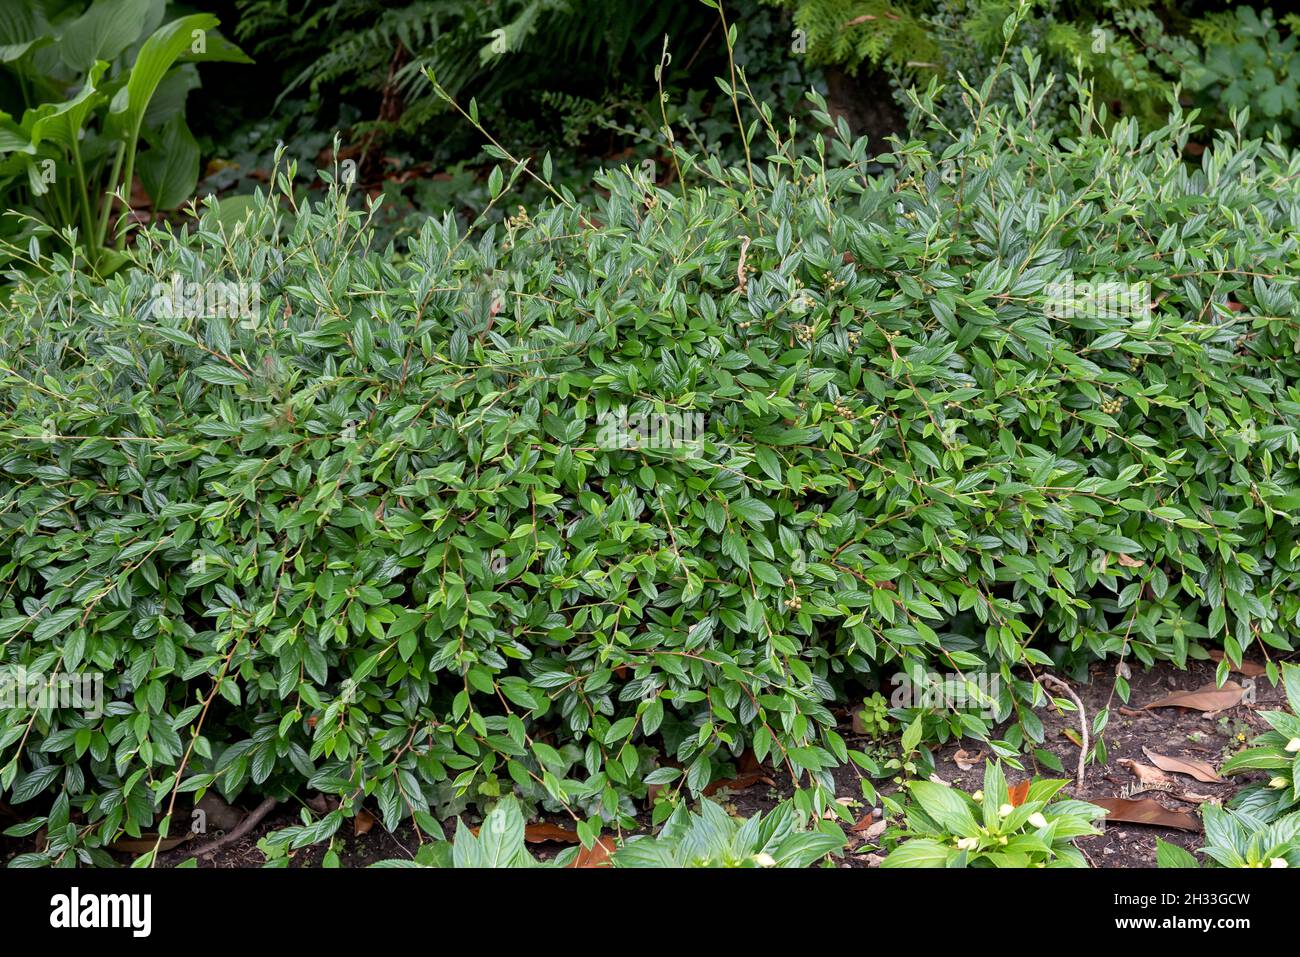 Weidenblättirge Zwergmispel (Cotoneaster salicifolius 'Parkteppich') Stock Photo